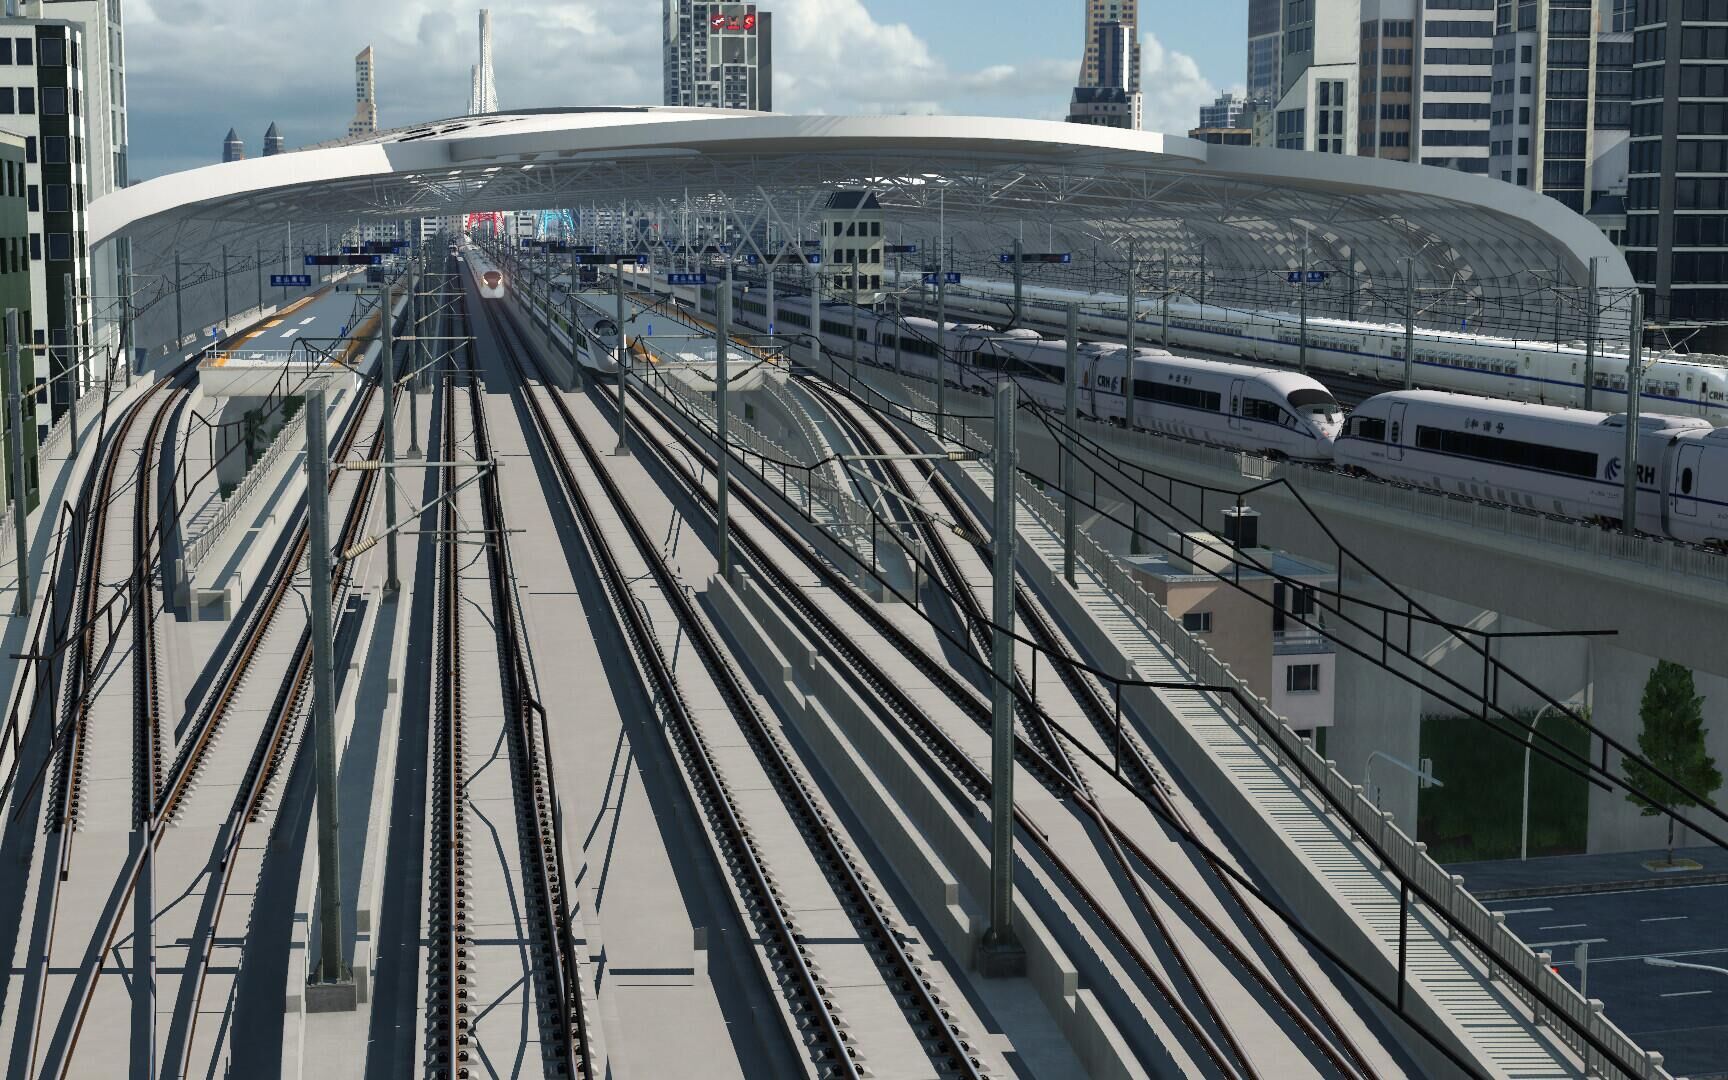 【狂热运输2】尚处于初步发展阶段的高铁运输